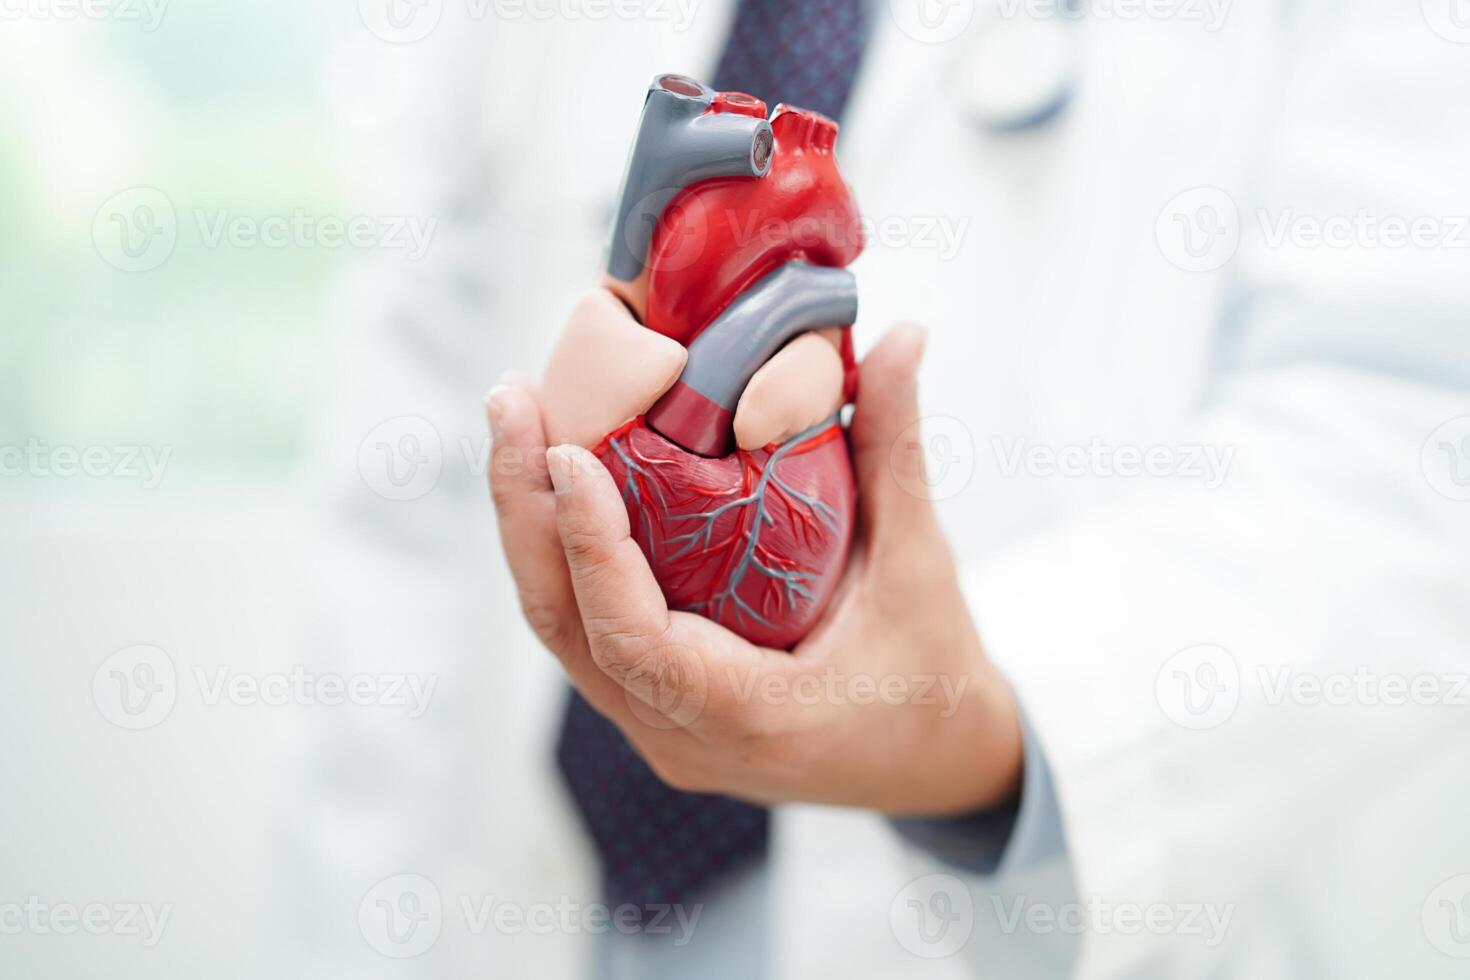 cardiovasculair ziekte cvd, dokter met hart menselijk model- anatomie voor behandeling geduldig in ziekenhuis. foto